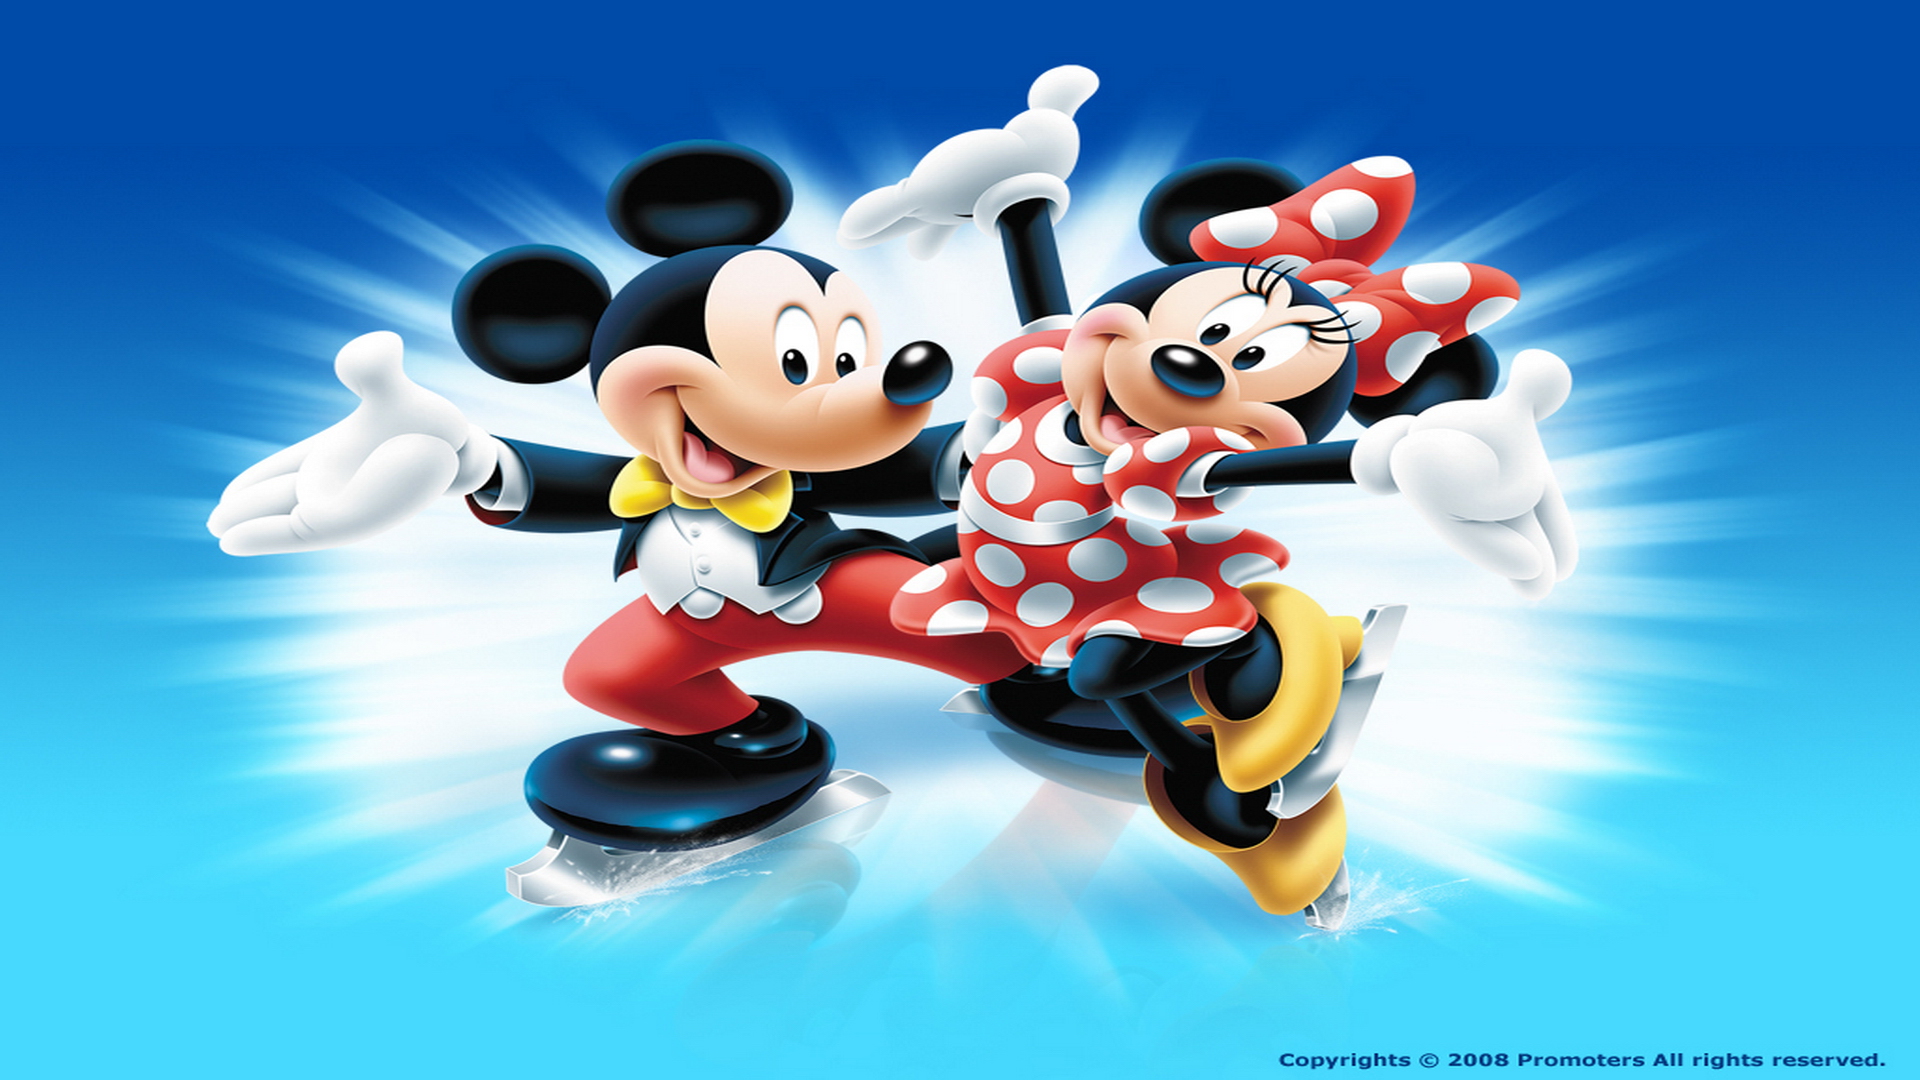 Disney Wallpaper HD Desktop Mickey And Minnie